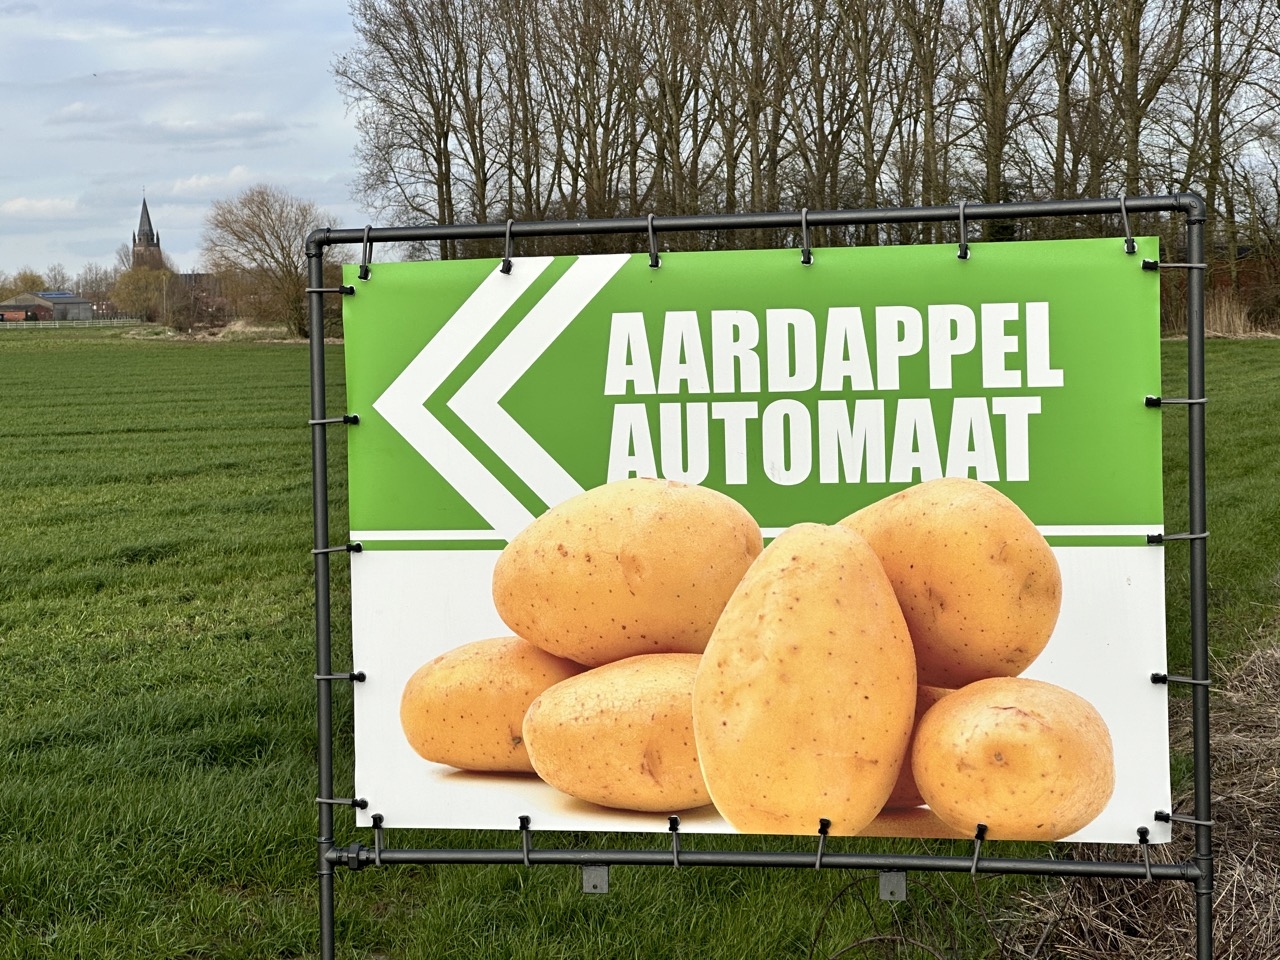 Dubbelzijdig spandoek aardappelautomaat Vlamertinge